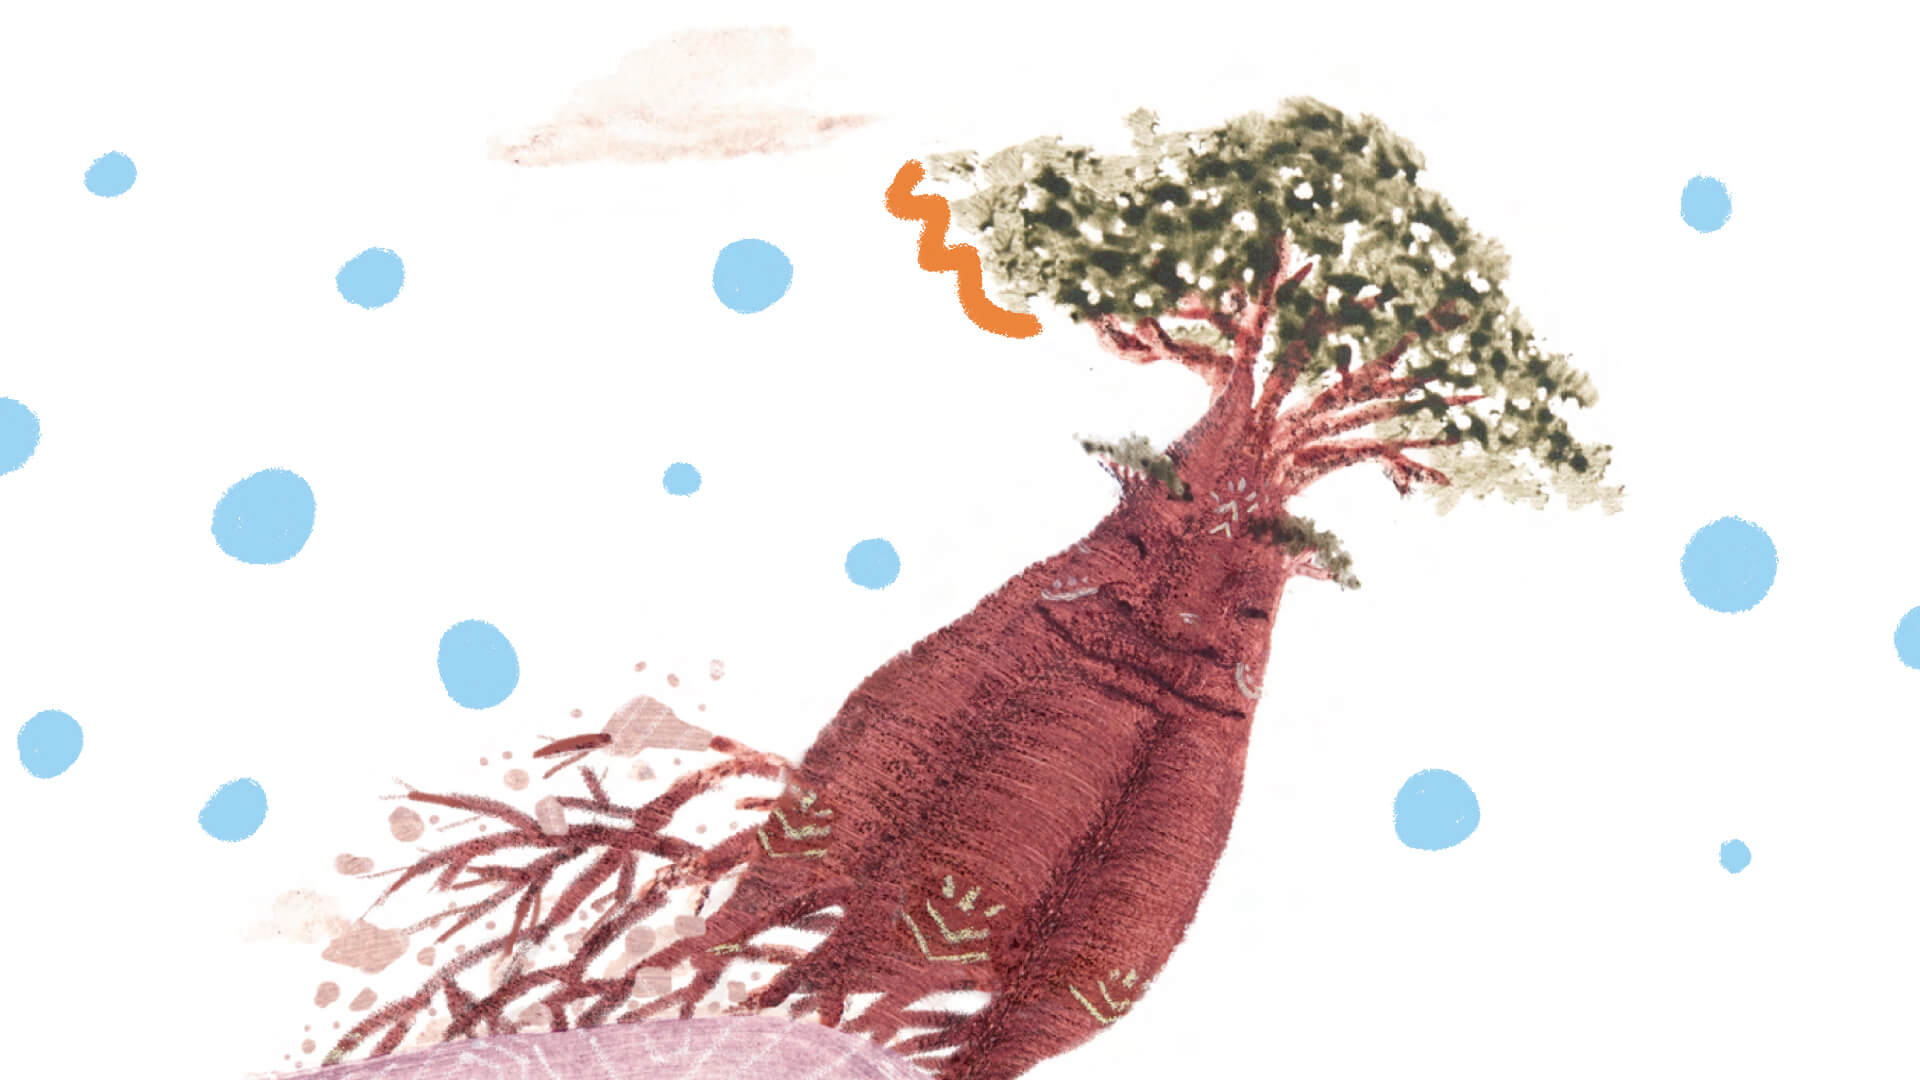 Imagem do livro "Uma aventura do Velho Baobá” que mostra as raízes da árvore como se estivesse em movimento. Em torno dela, há intervenções de arte com bolinhas azuis e rabiscos laranjas.